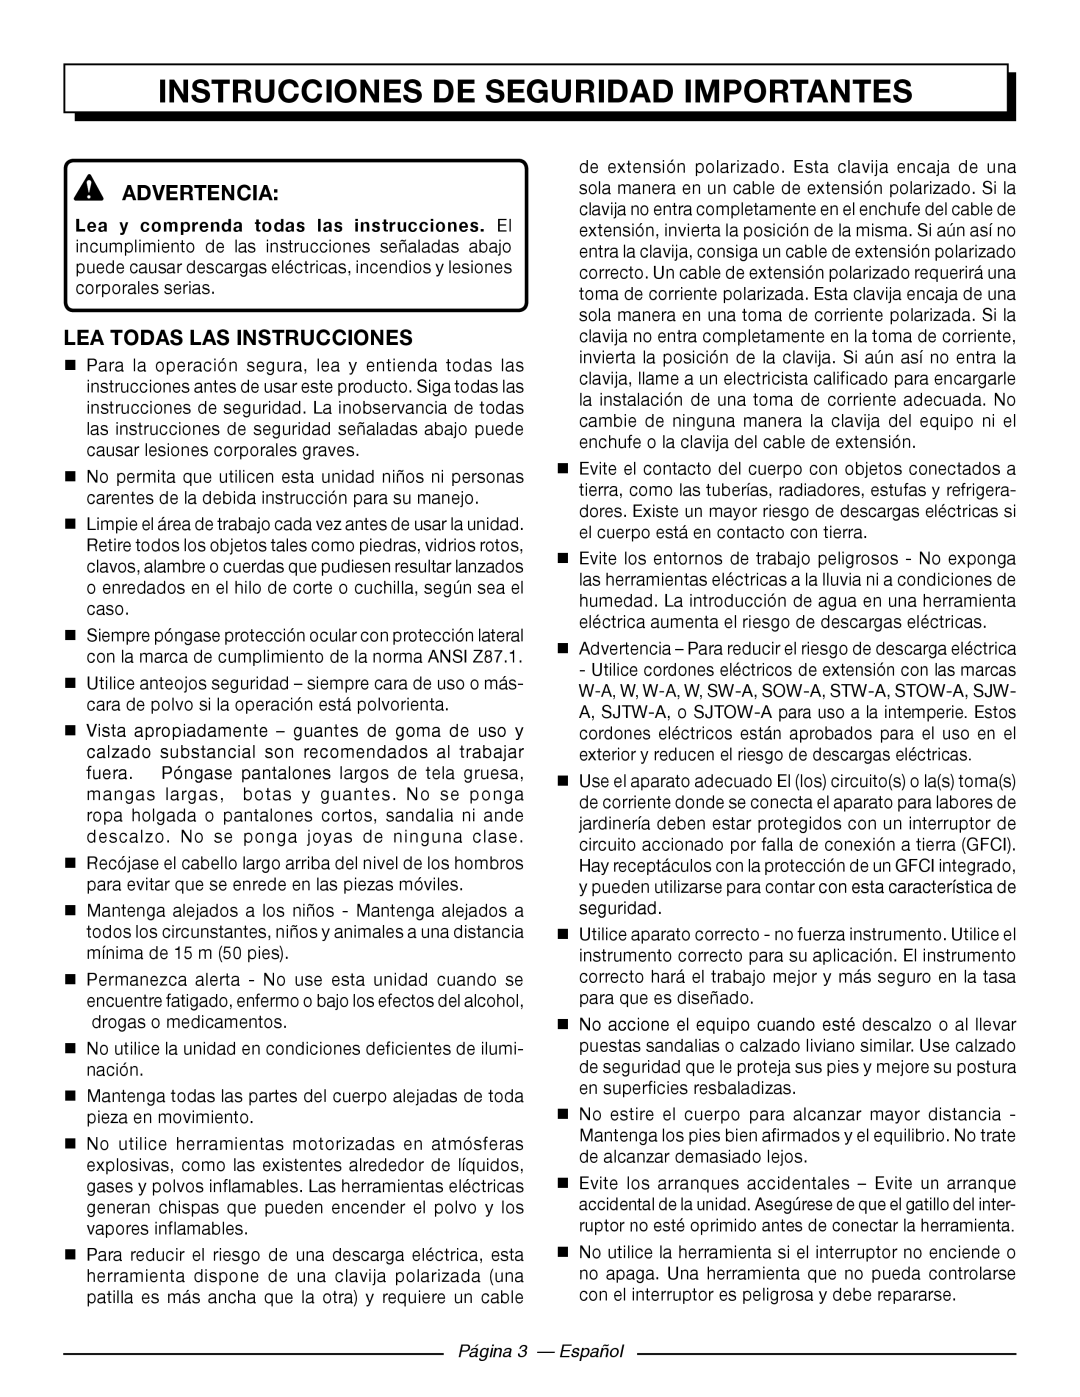 Homelite UT41121 Instrucciones De Seguridad Importantes, Advertencia, Lea Todas Las Instrucciones, Página 3 - Español 